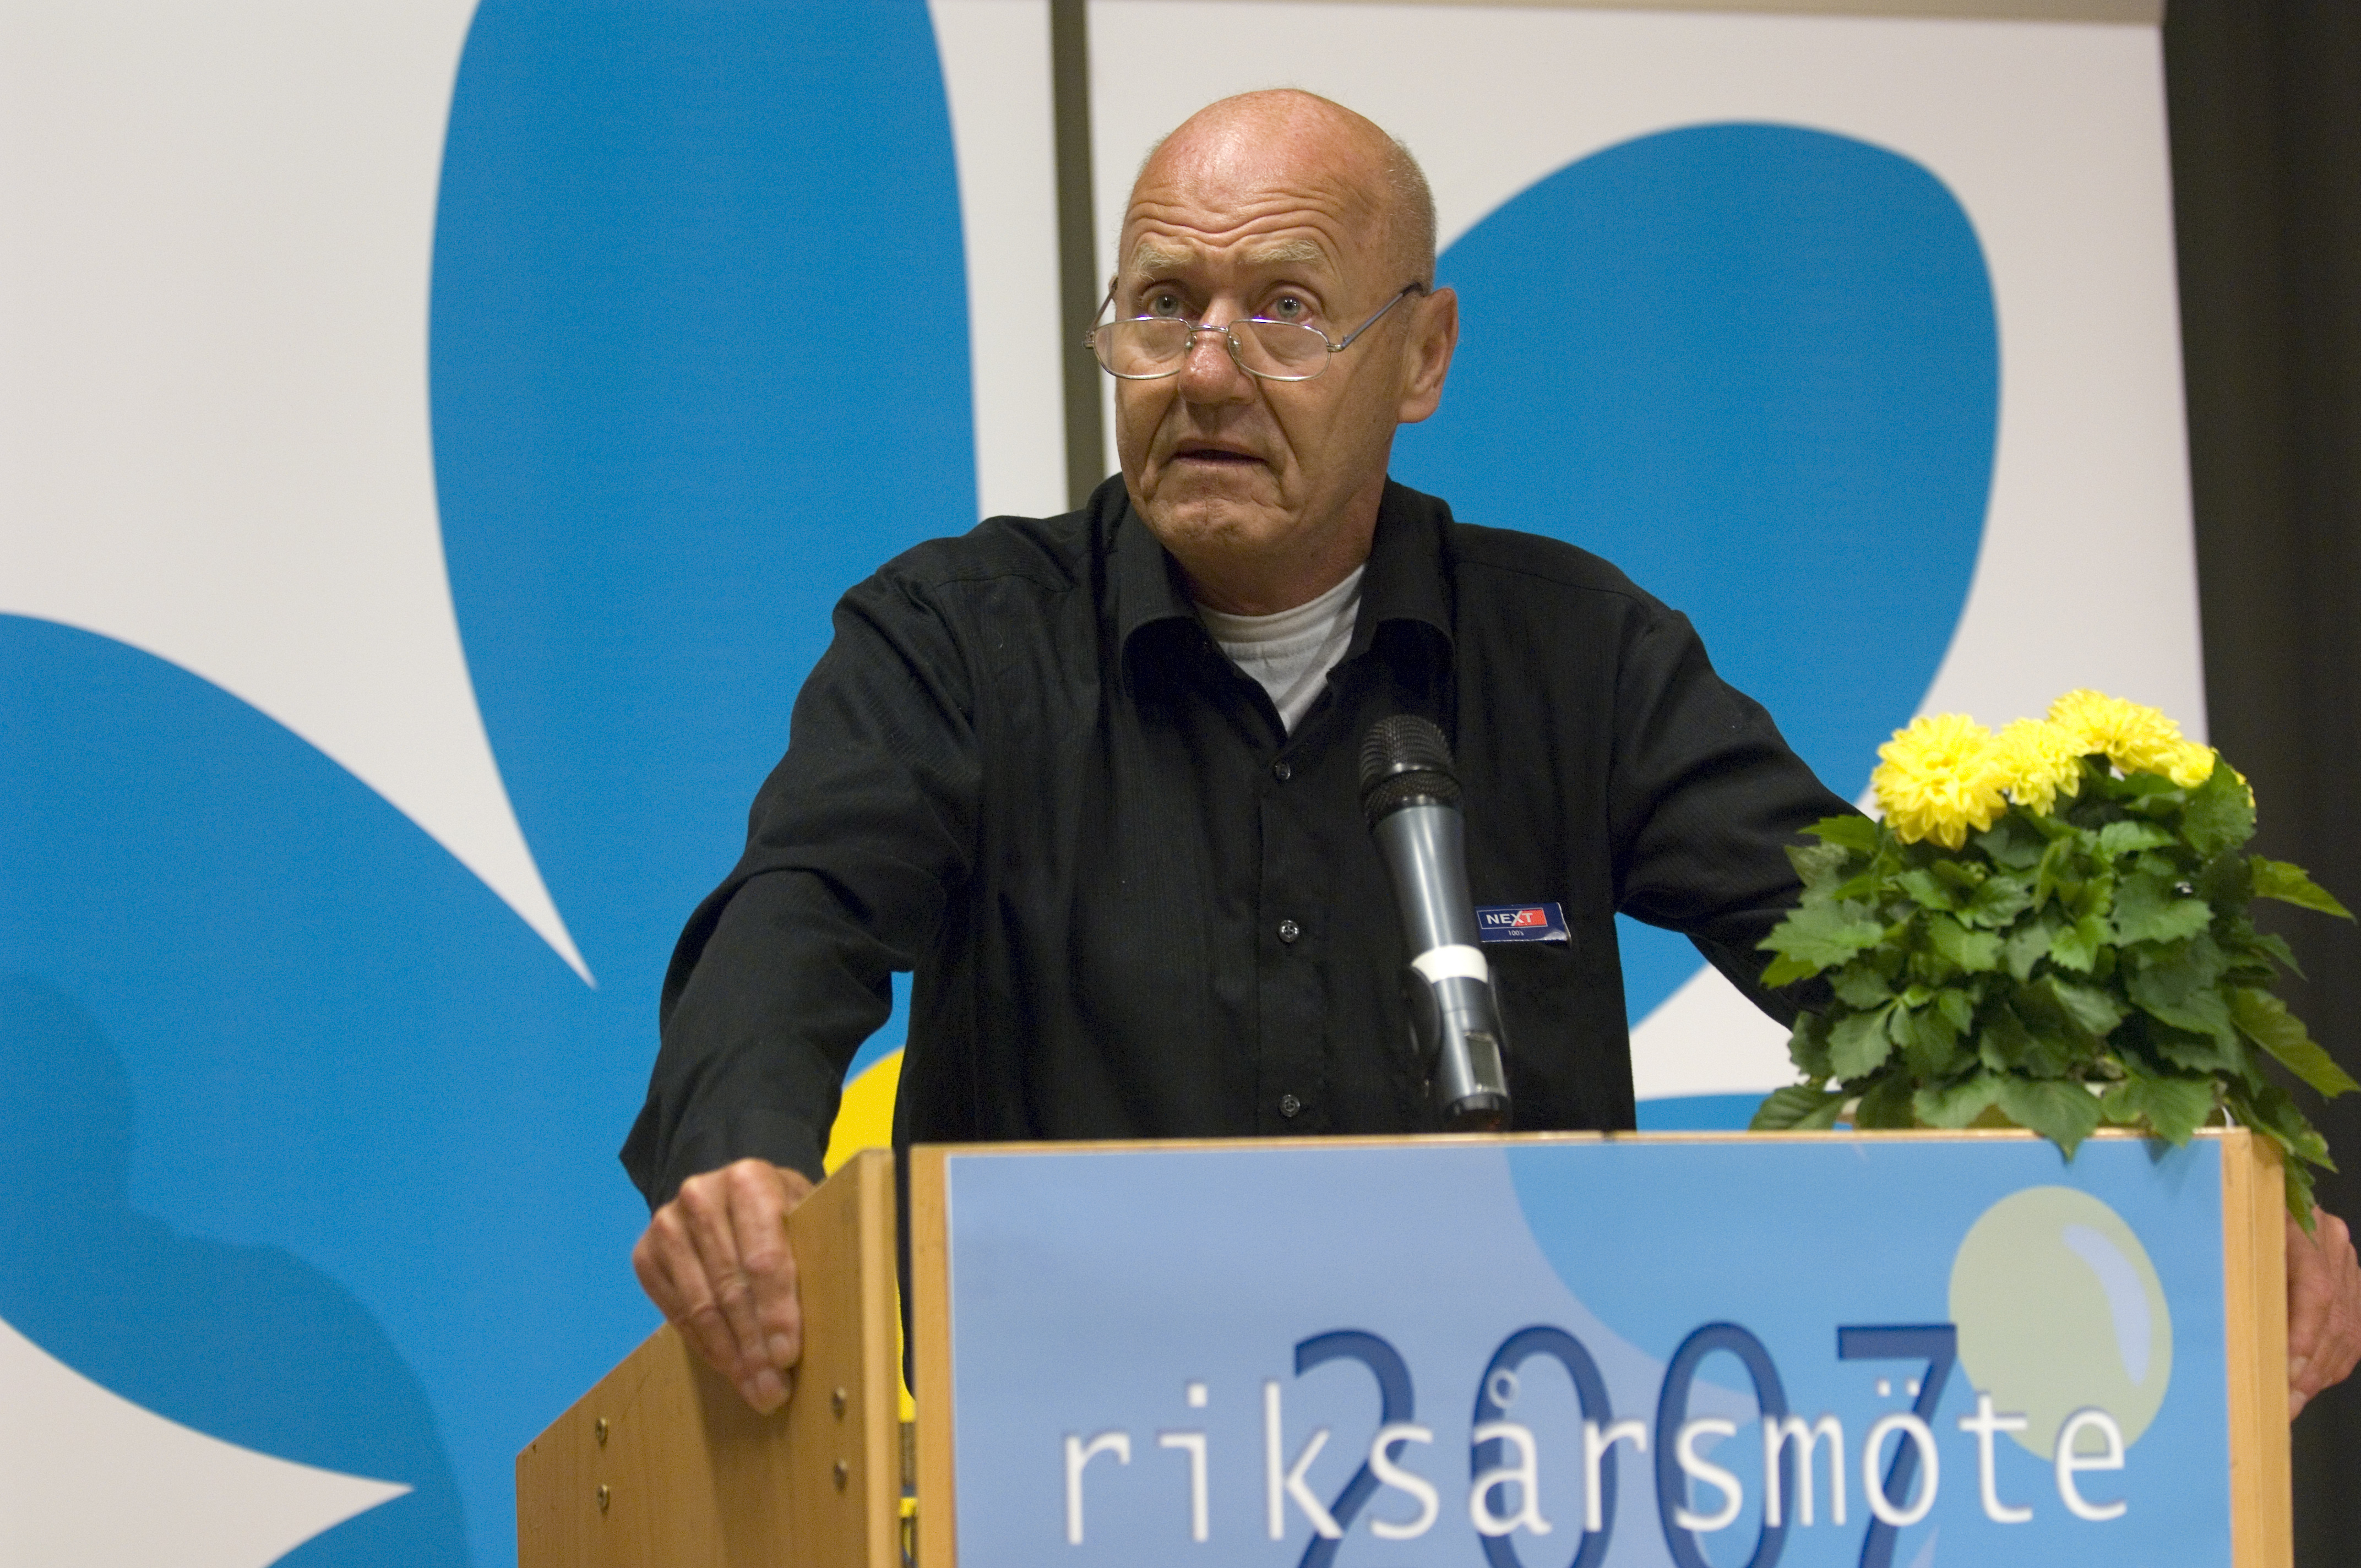 Avlidit, Avliden, Moderaterna, Riksdagsvalet 2010, Död, Sten Andersson, Sverigedemokraterna